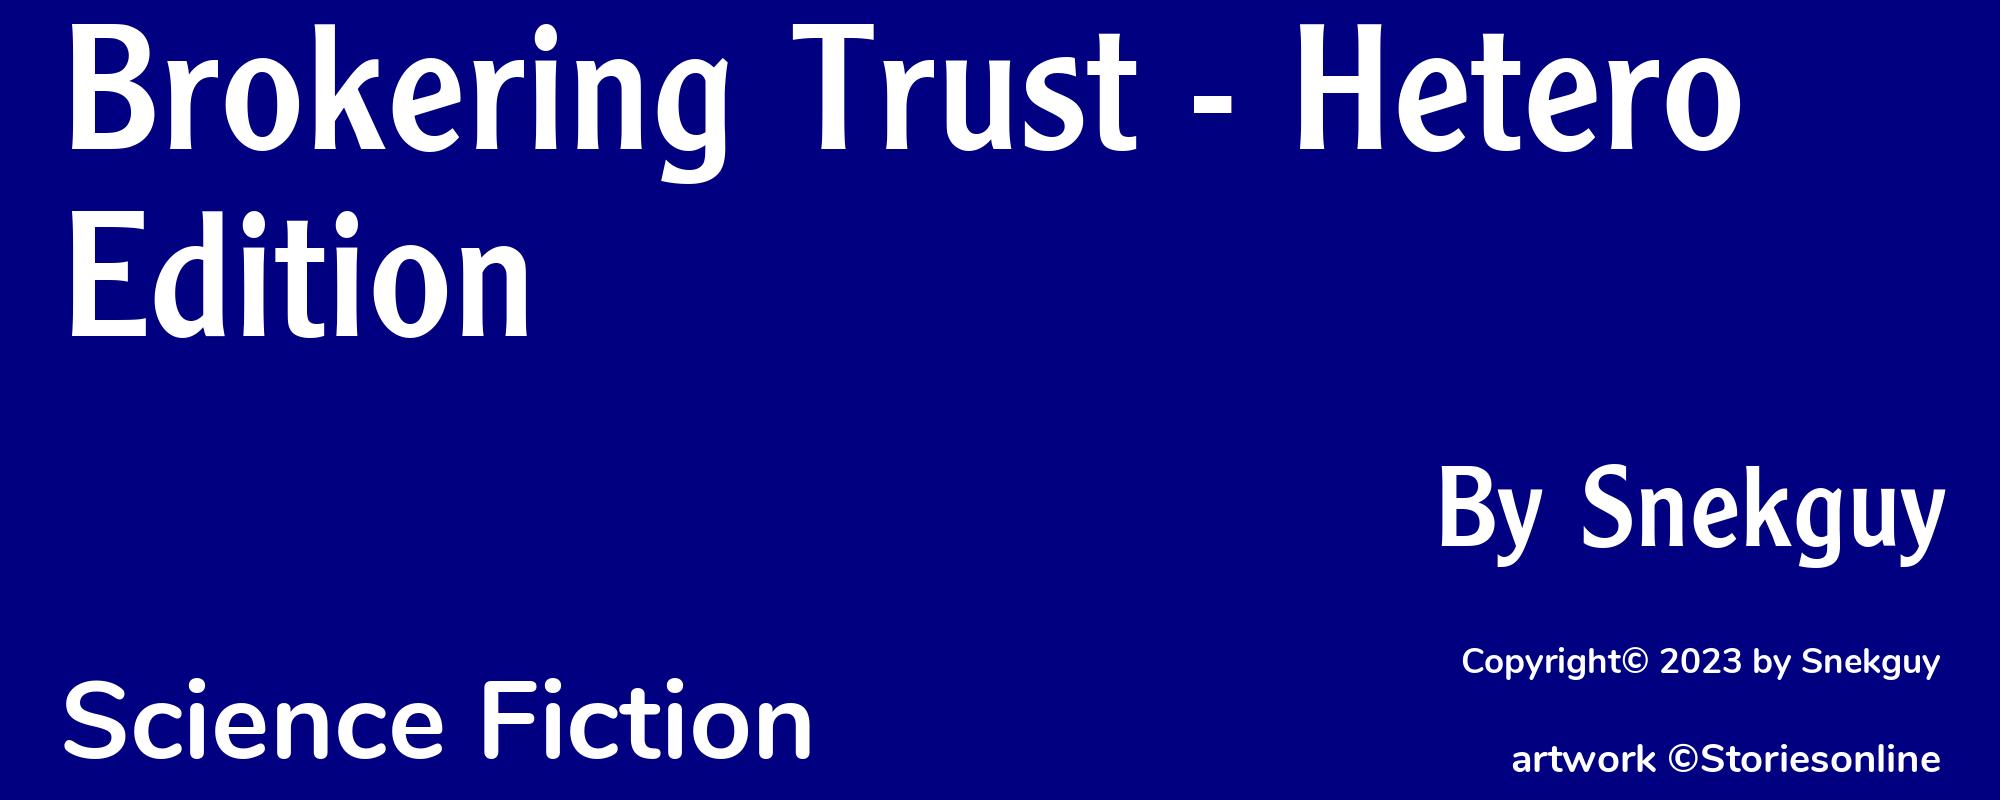 Brokering Trust - Hetero Edition - Cover